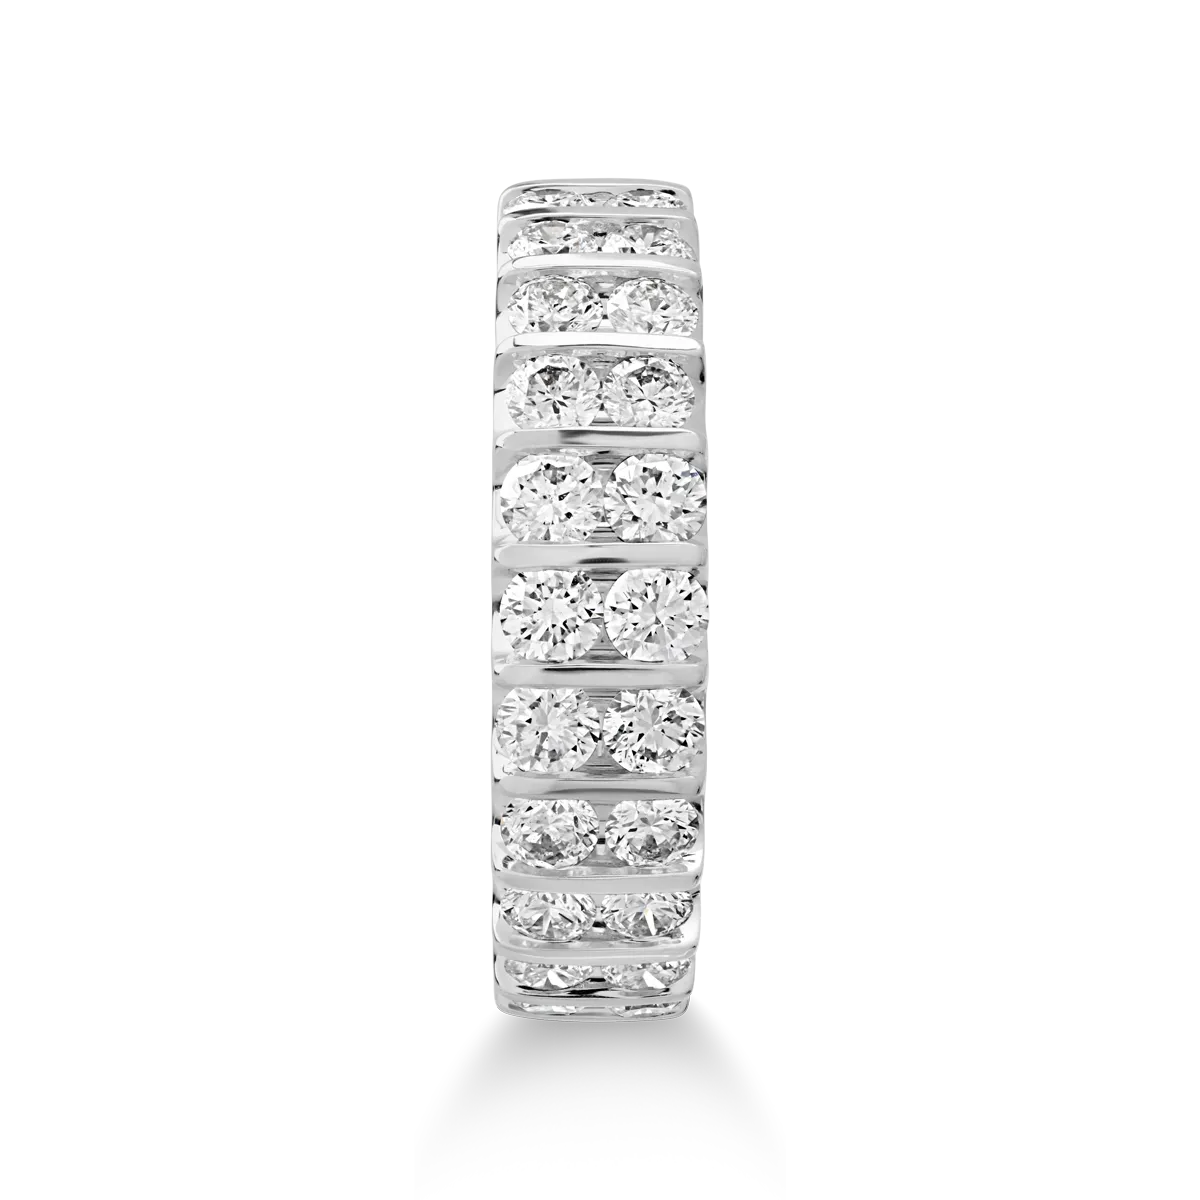 18 karátos fehérarany gyűrű 1.25 karátos gyémántokkal